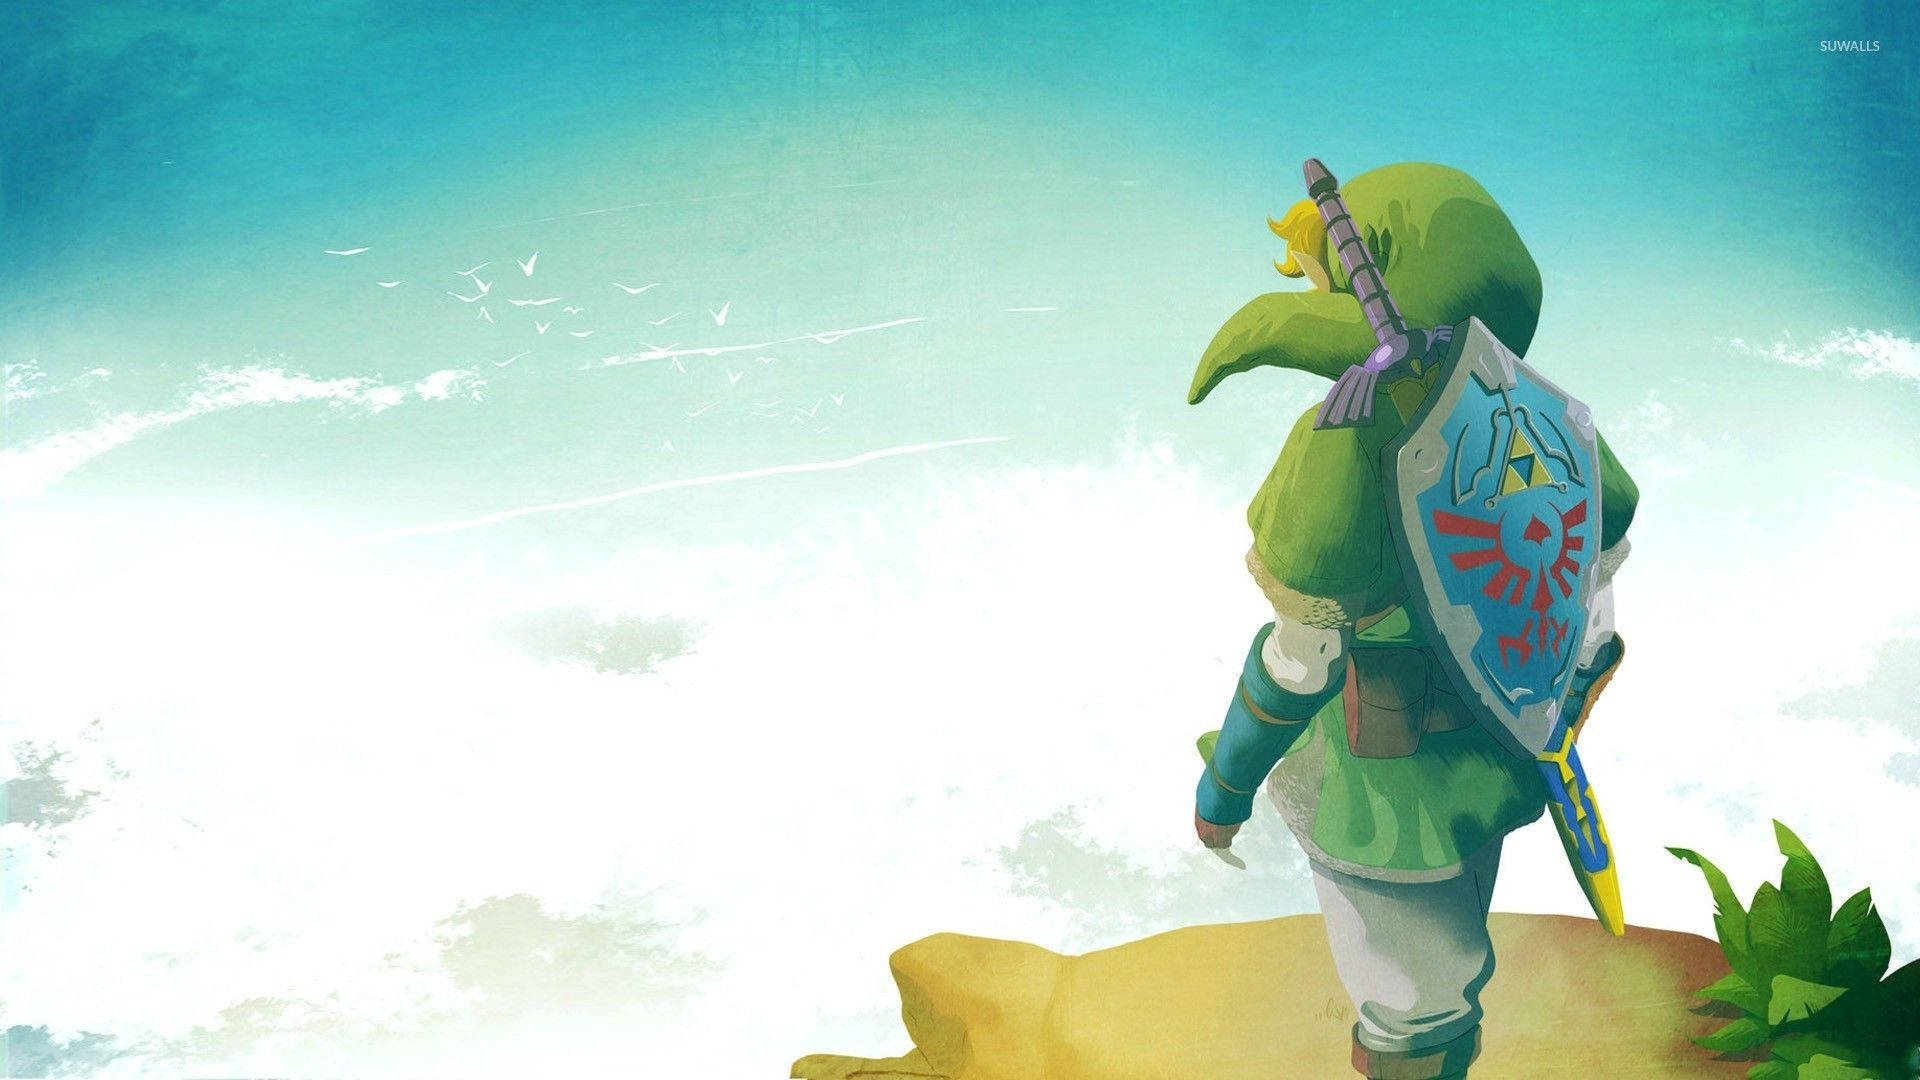 Link stands ready in Hyrule Castle Wallpaper